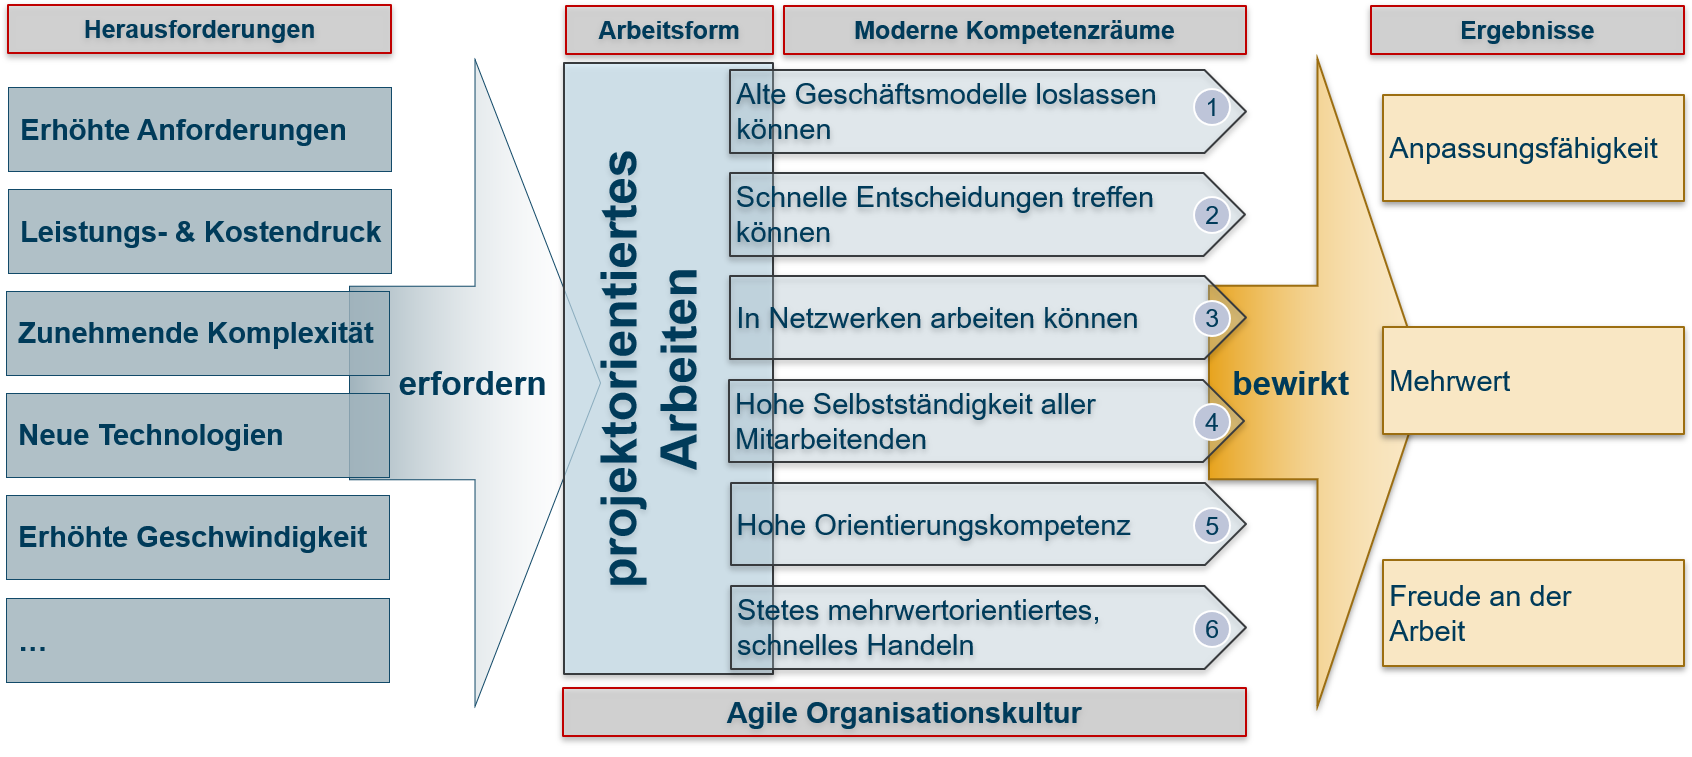 Grafische Darstellung der SPOL für agile Arbeitsform und moderneKompetenzräume